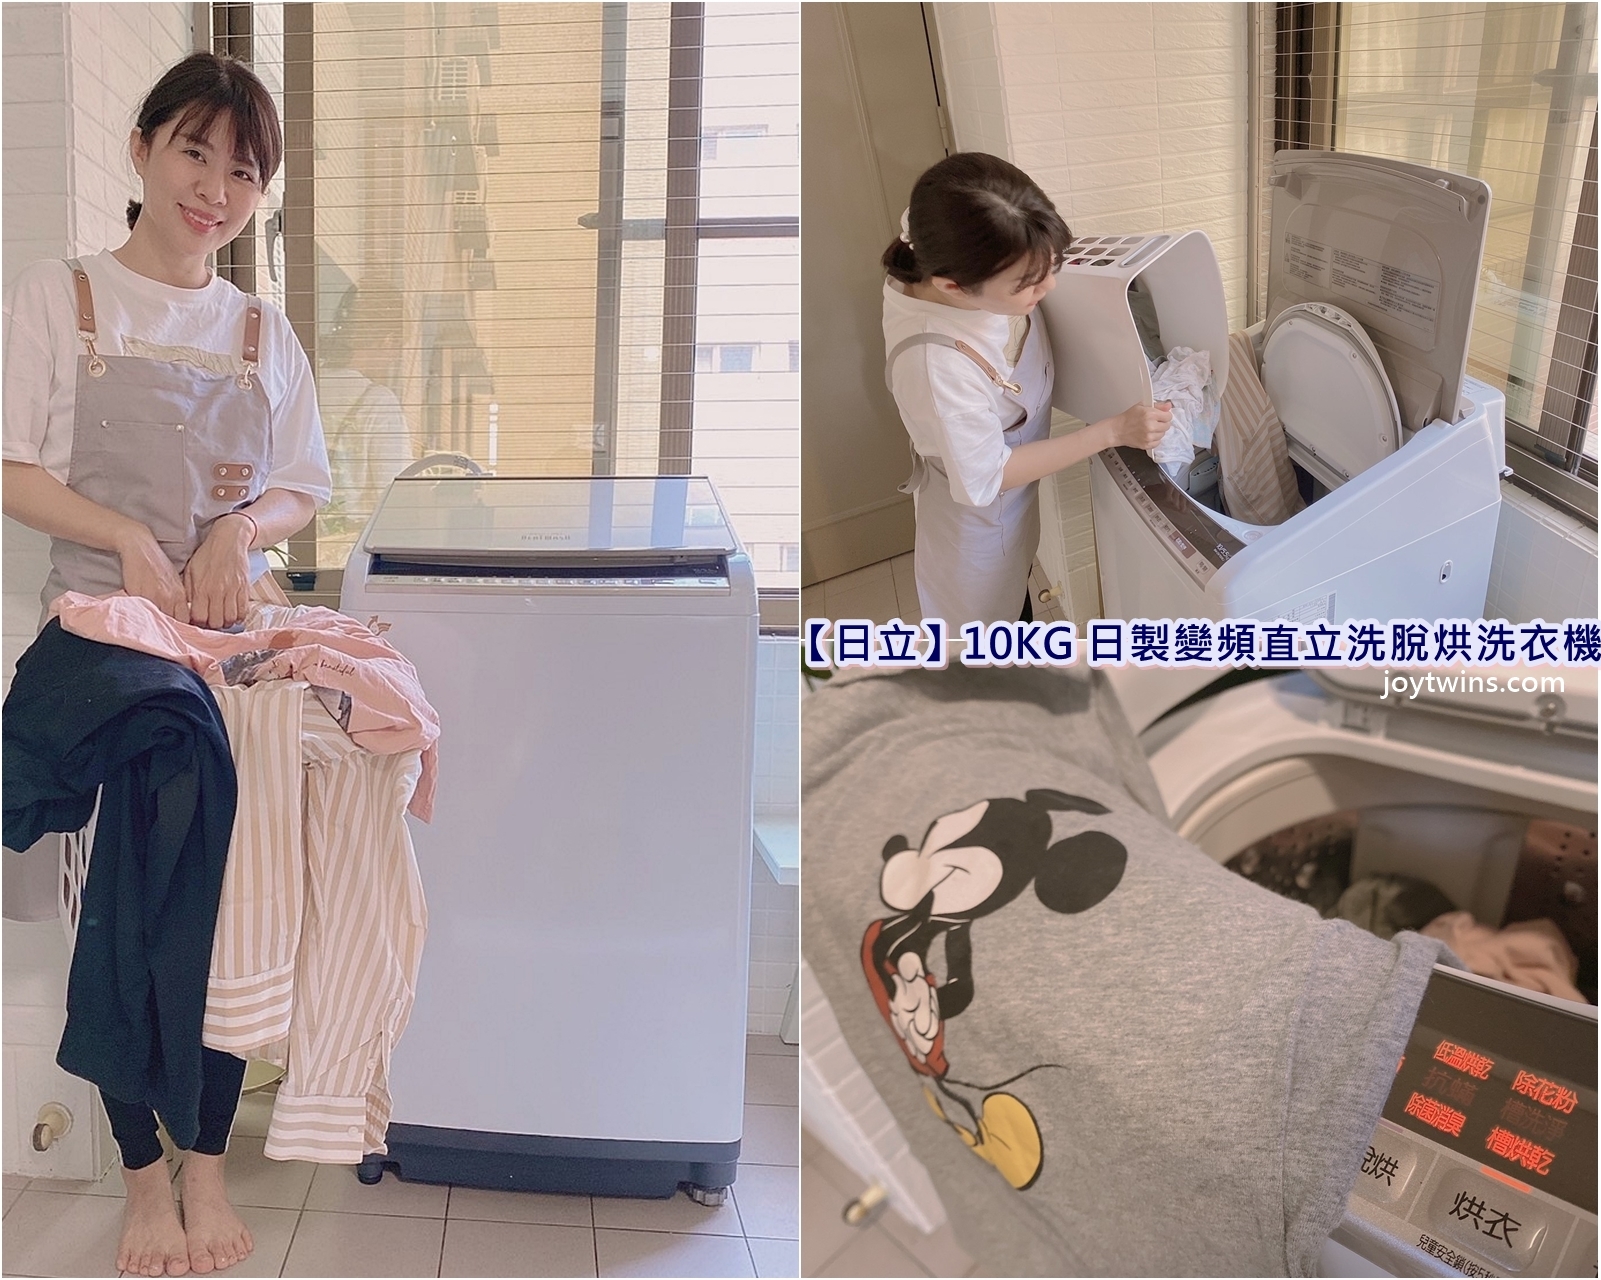 【日立】10KG 日製變頻直立洗脫烘洗衣機 小家庭首選!美型不佔空間 烘衣一級棒!